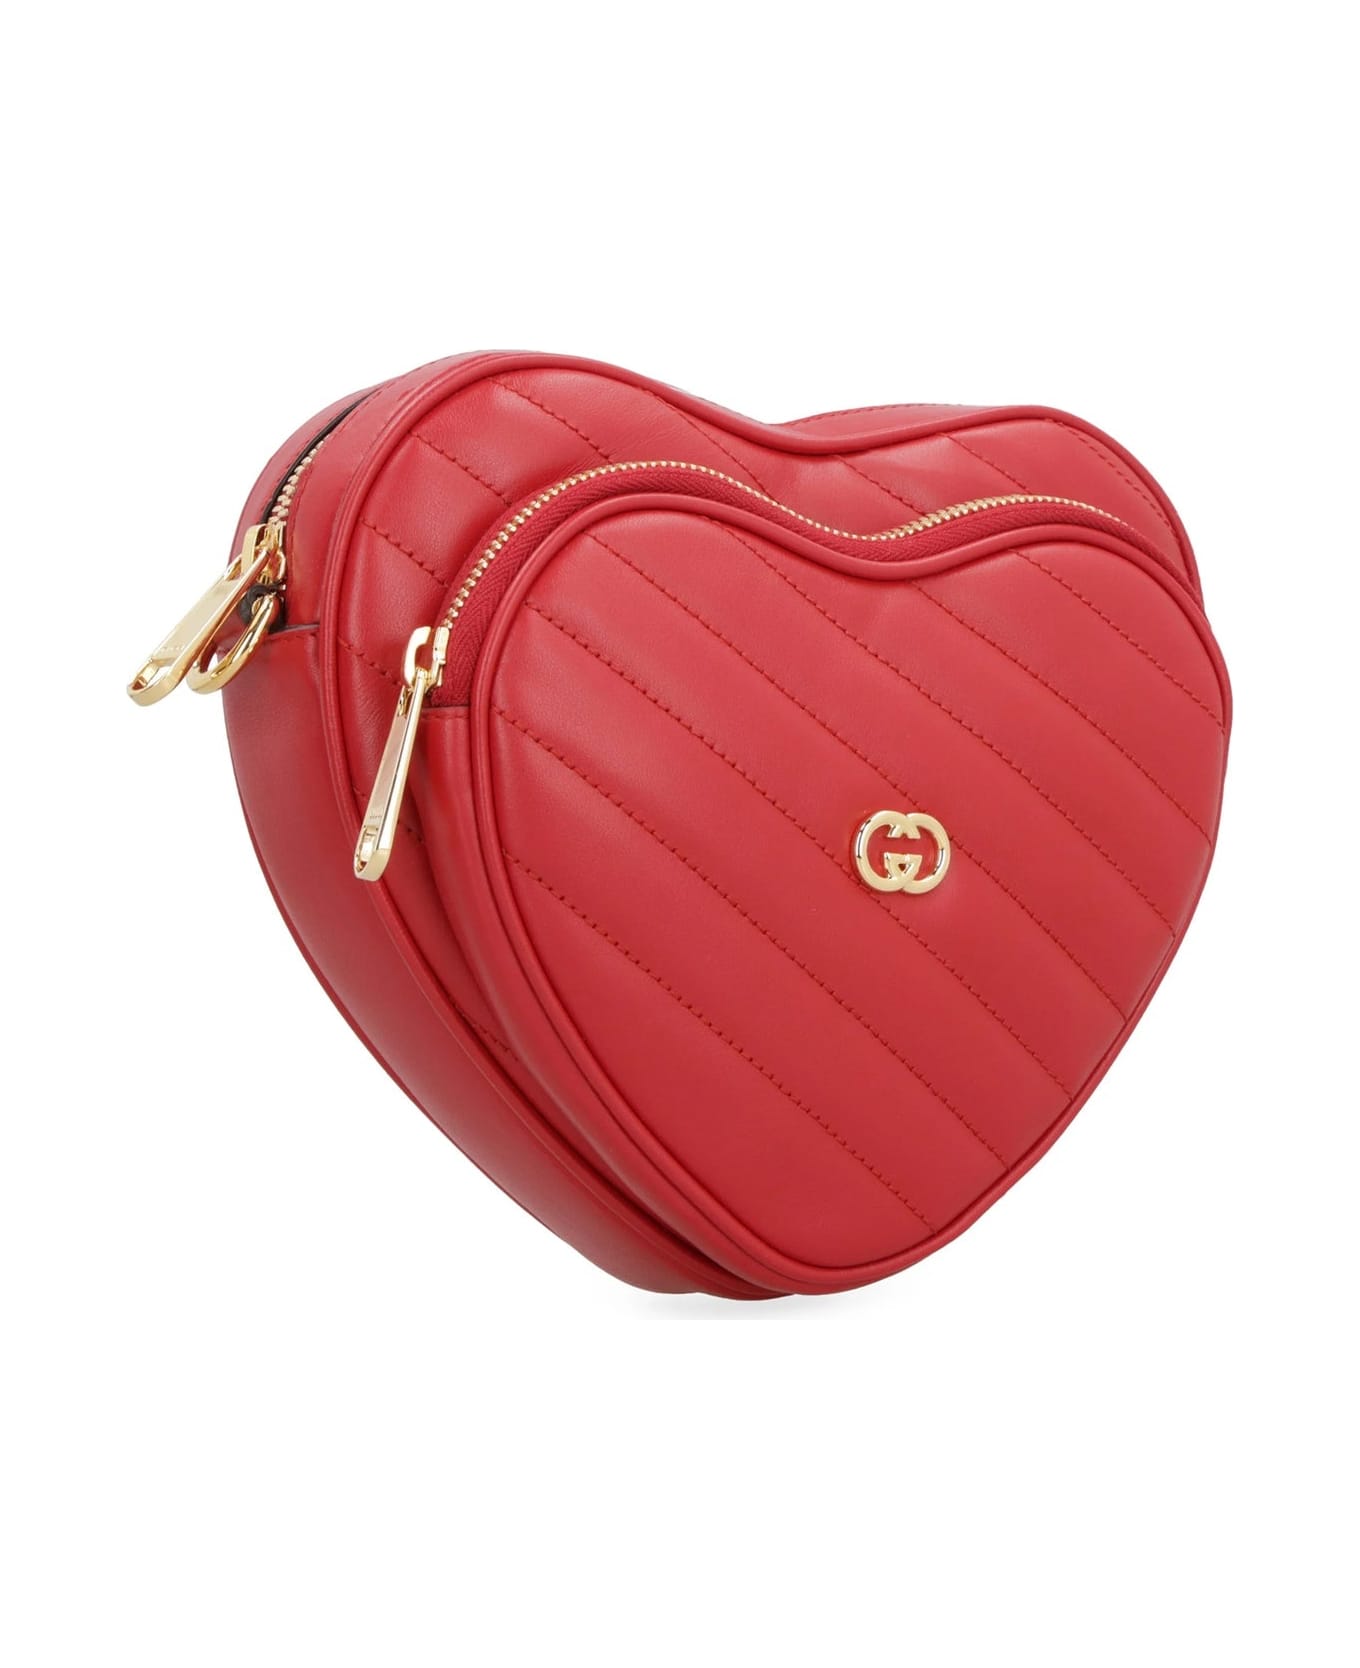 Gucci Heart Shoulder Bag - Red